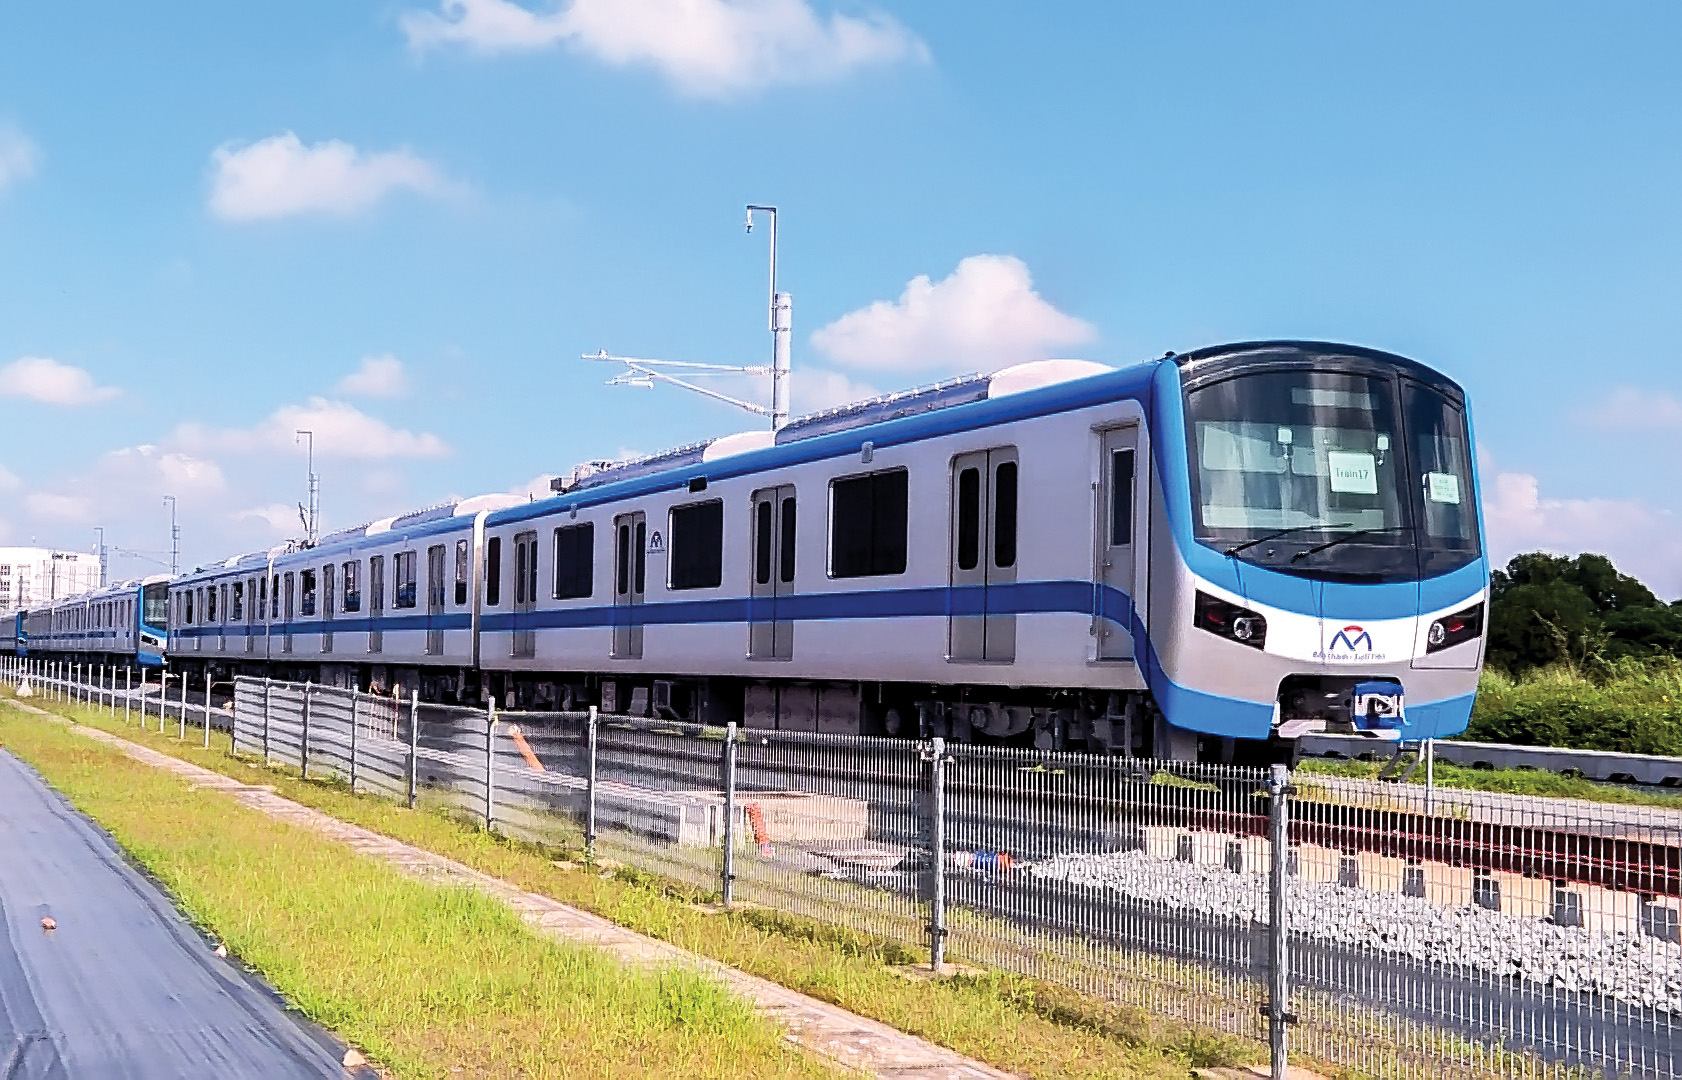 Sáng ngày 30-8, Ban Quản lý Đường sắt đô thị TP. Hồ Chí Minh (MAUR) tổ chức Lễ chạy thử đoàn tàu metro đầu tiên tại depot Long Bình thuộc dự án tuyến metro số 1 (Bến Thành - Suối Tiên). Đây là sự kiện đánh dấu thêm một cột mốc mới trong quá trình triển khai dự án.